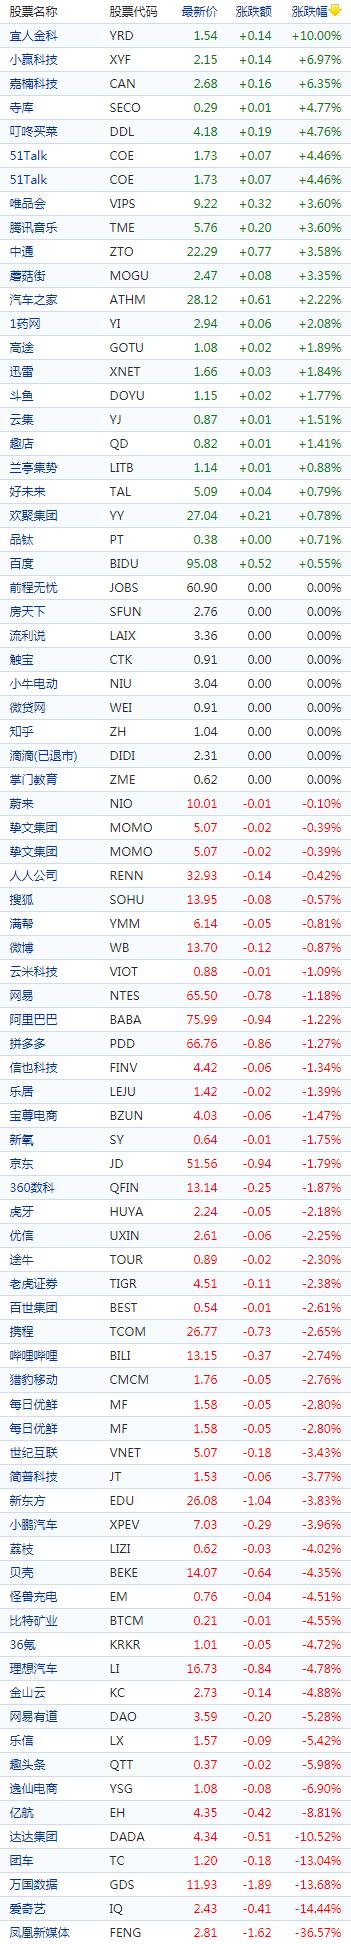 中国概念股收盘：财报股普遍下挫，声网跌超20%、爱奇艺跌超14%